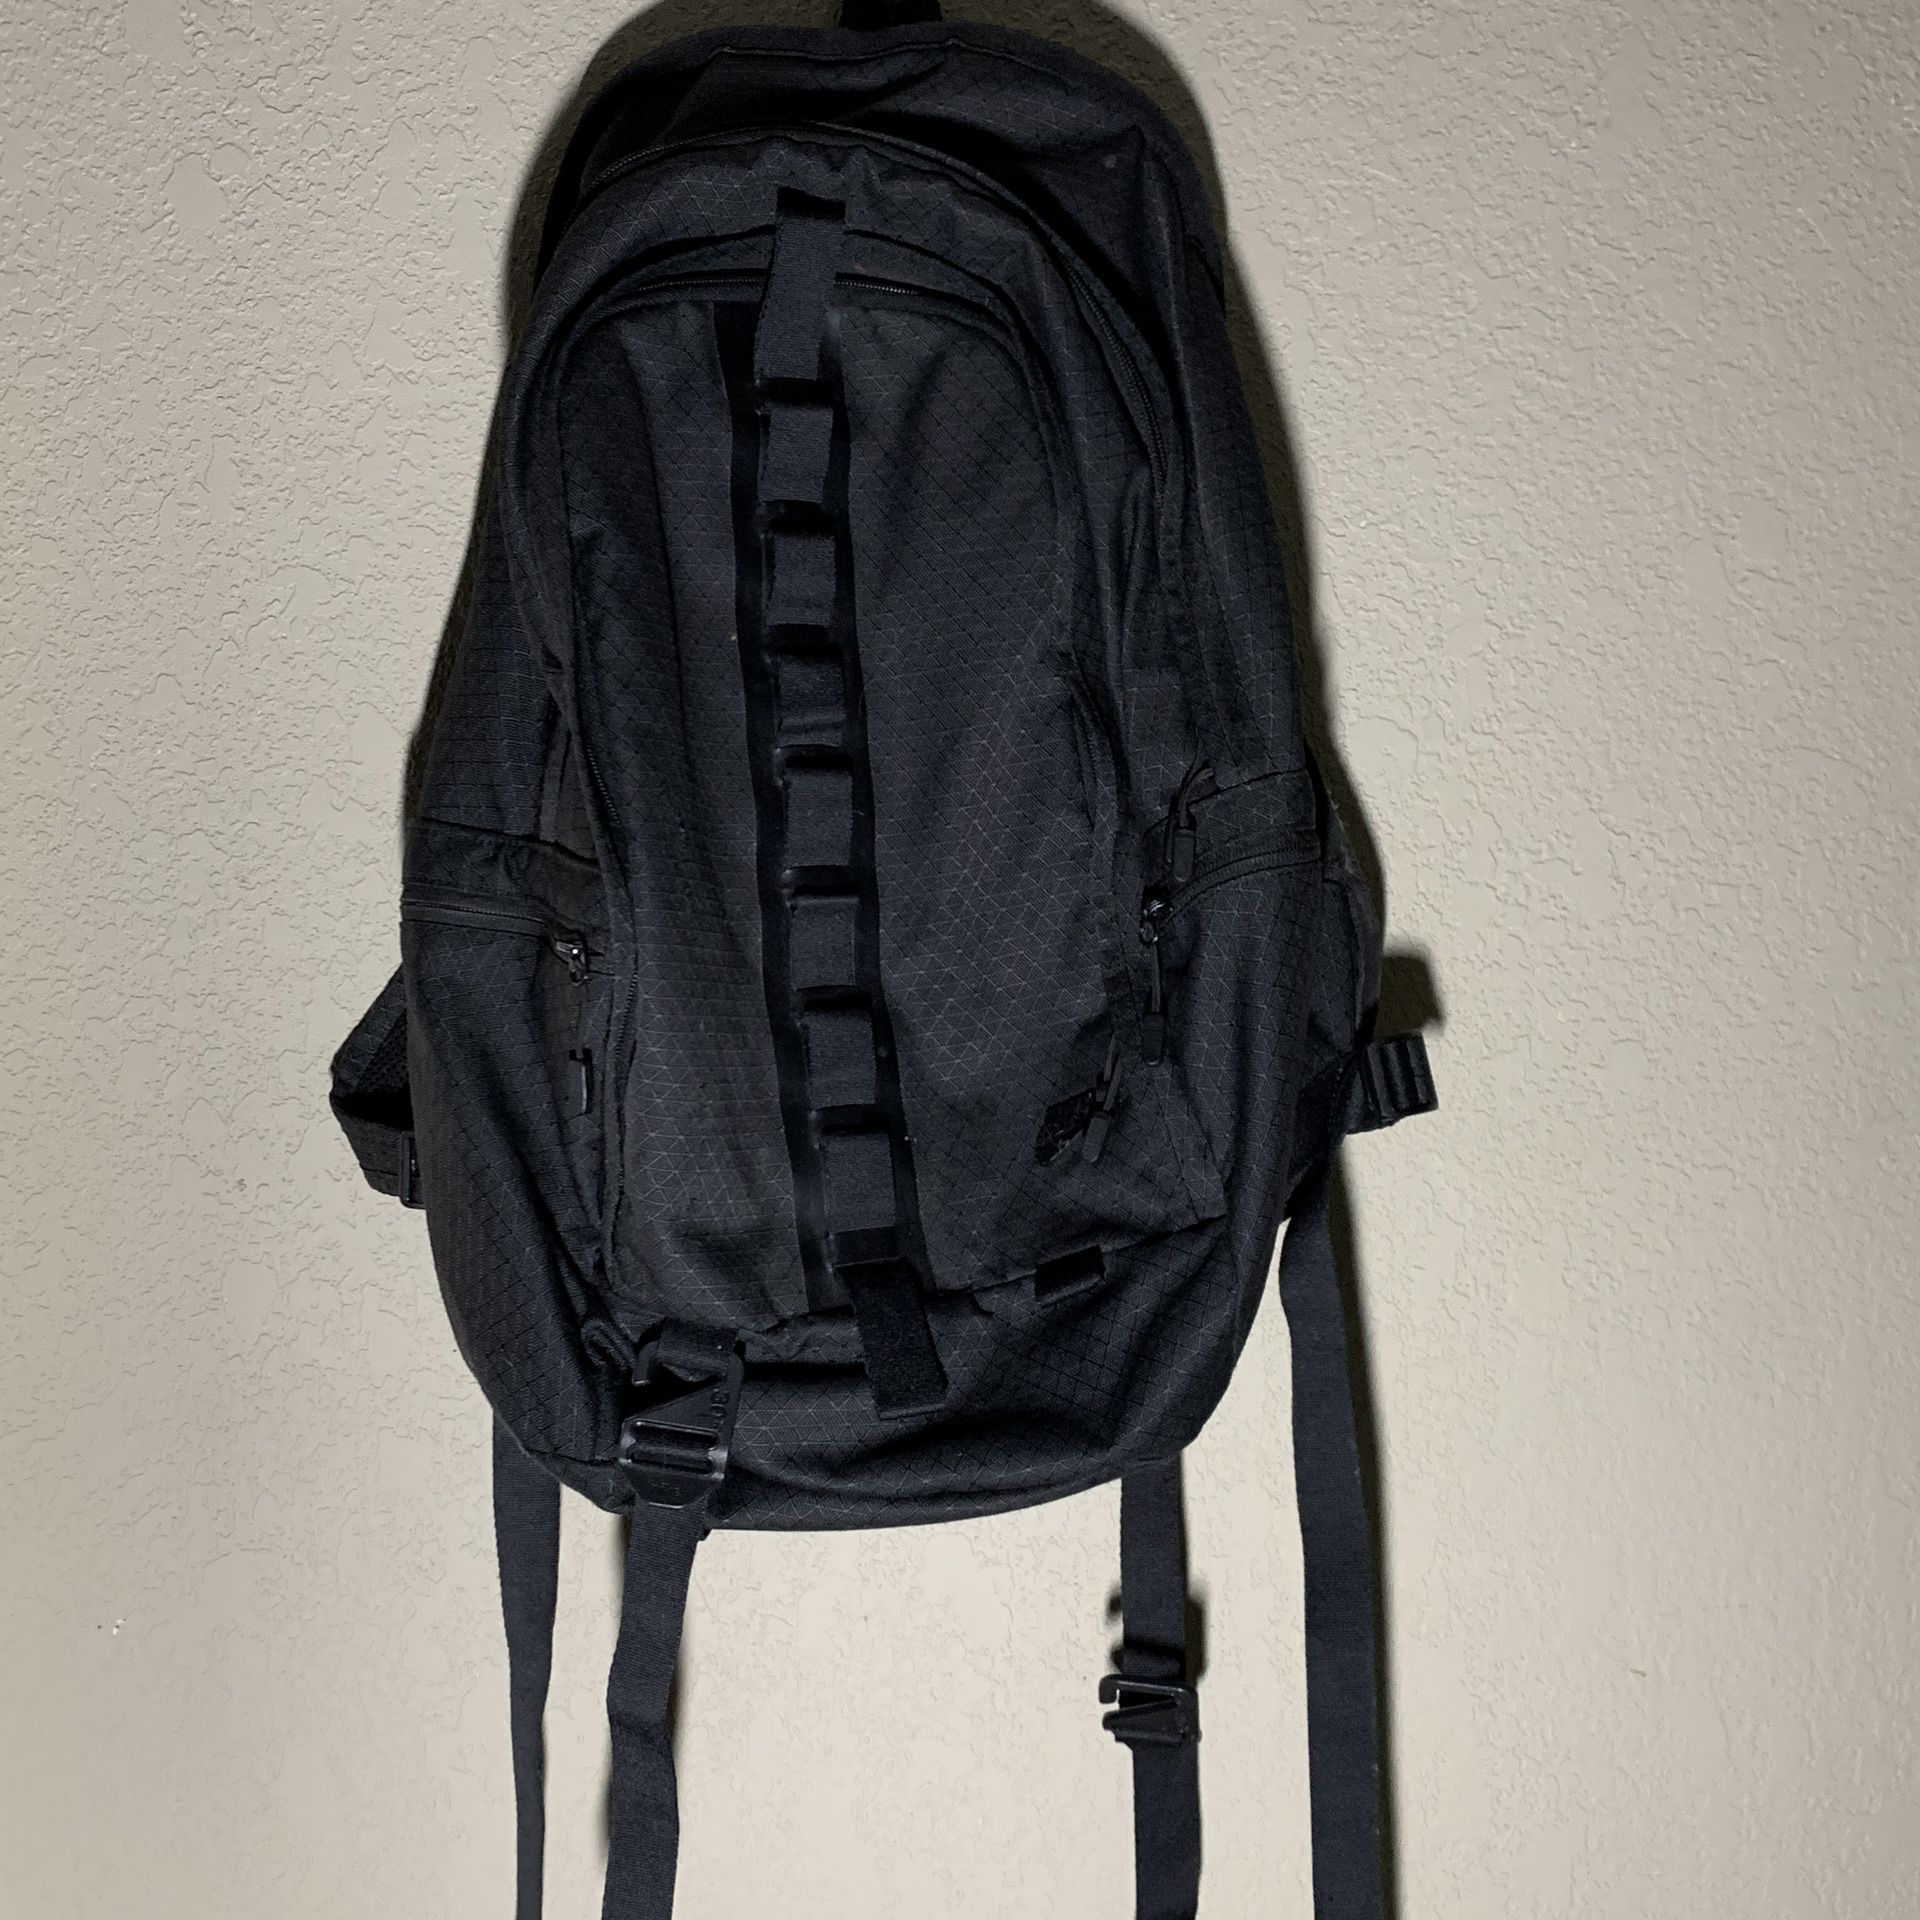 Nike All Black Backpack